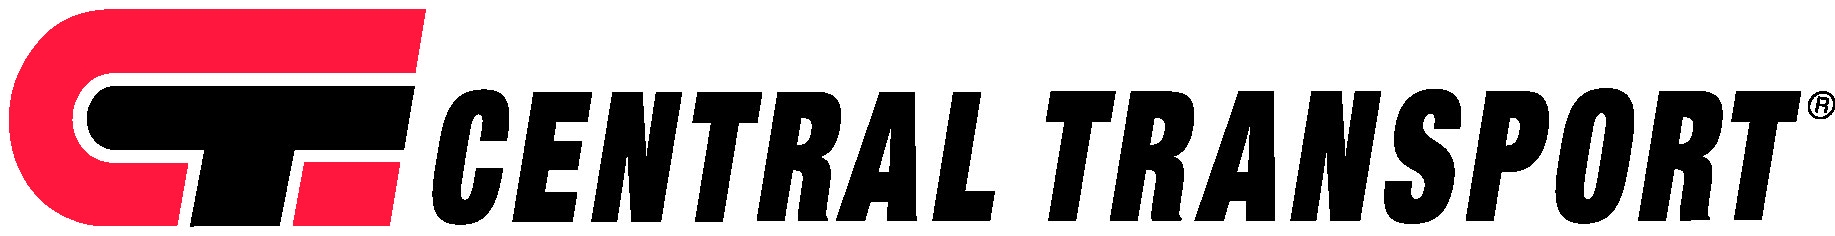 central transport logo